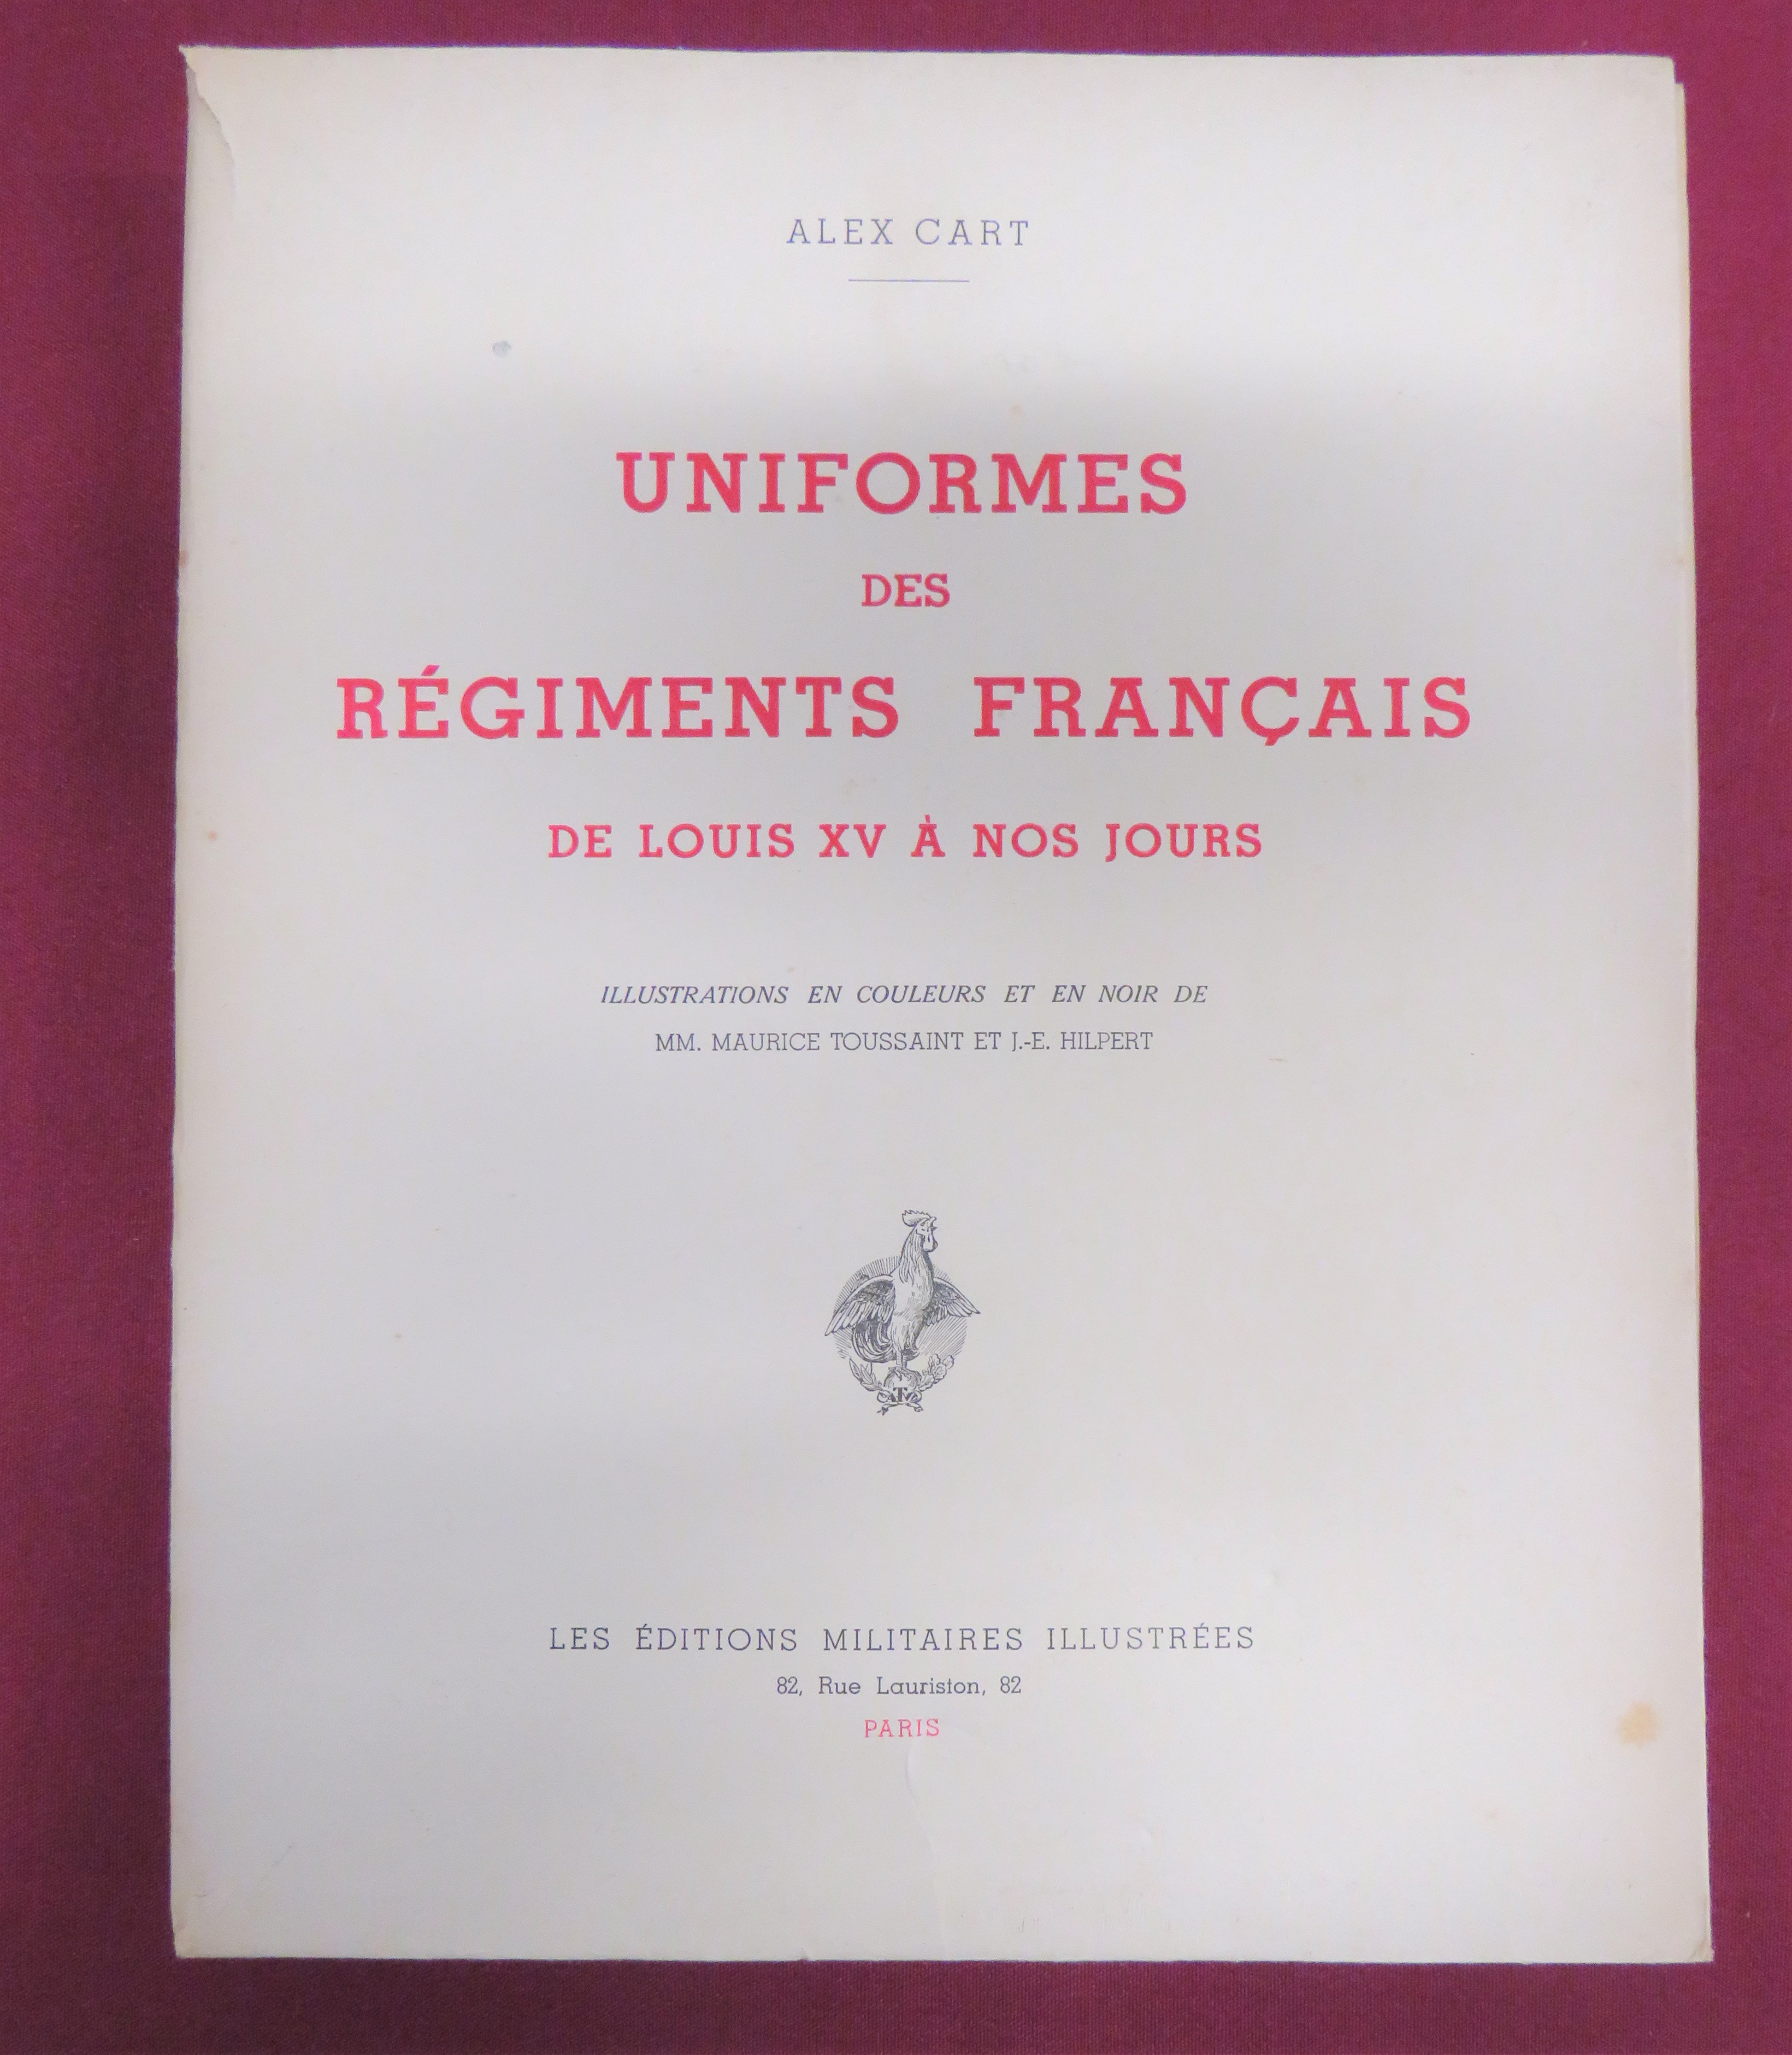 Uniformed des Regiments Francais de Louis XV a Nos Jours by Alex Cart. Scarce 1st Edition. No 33